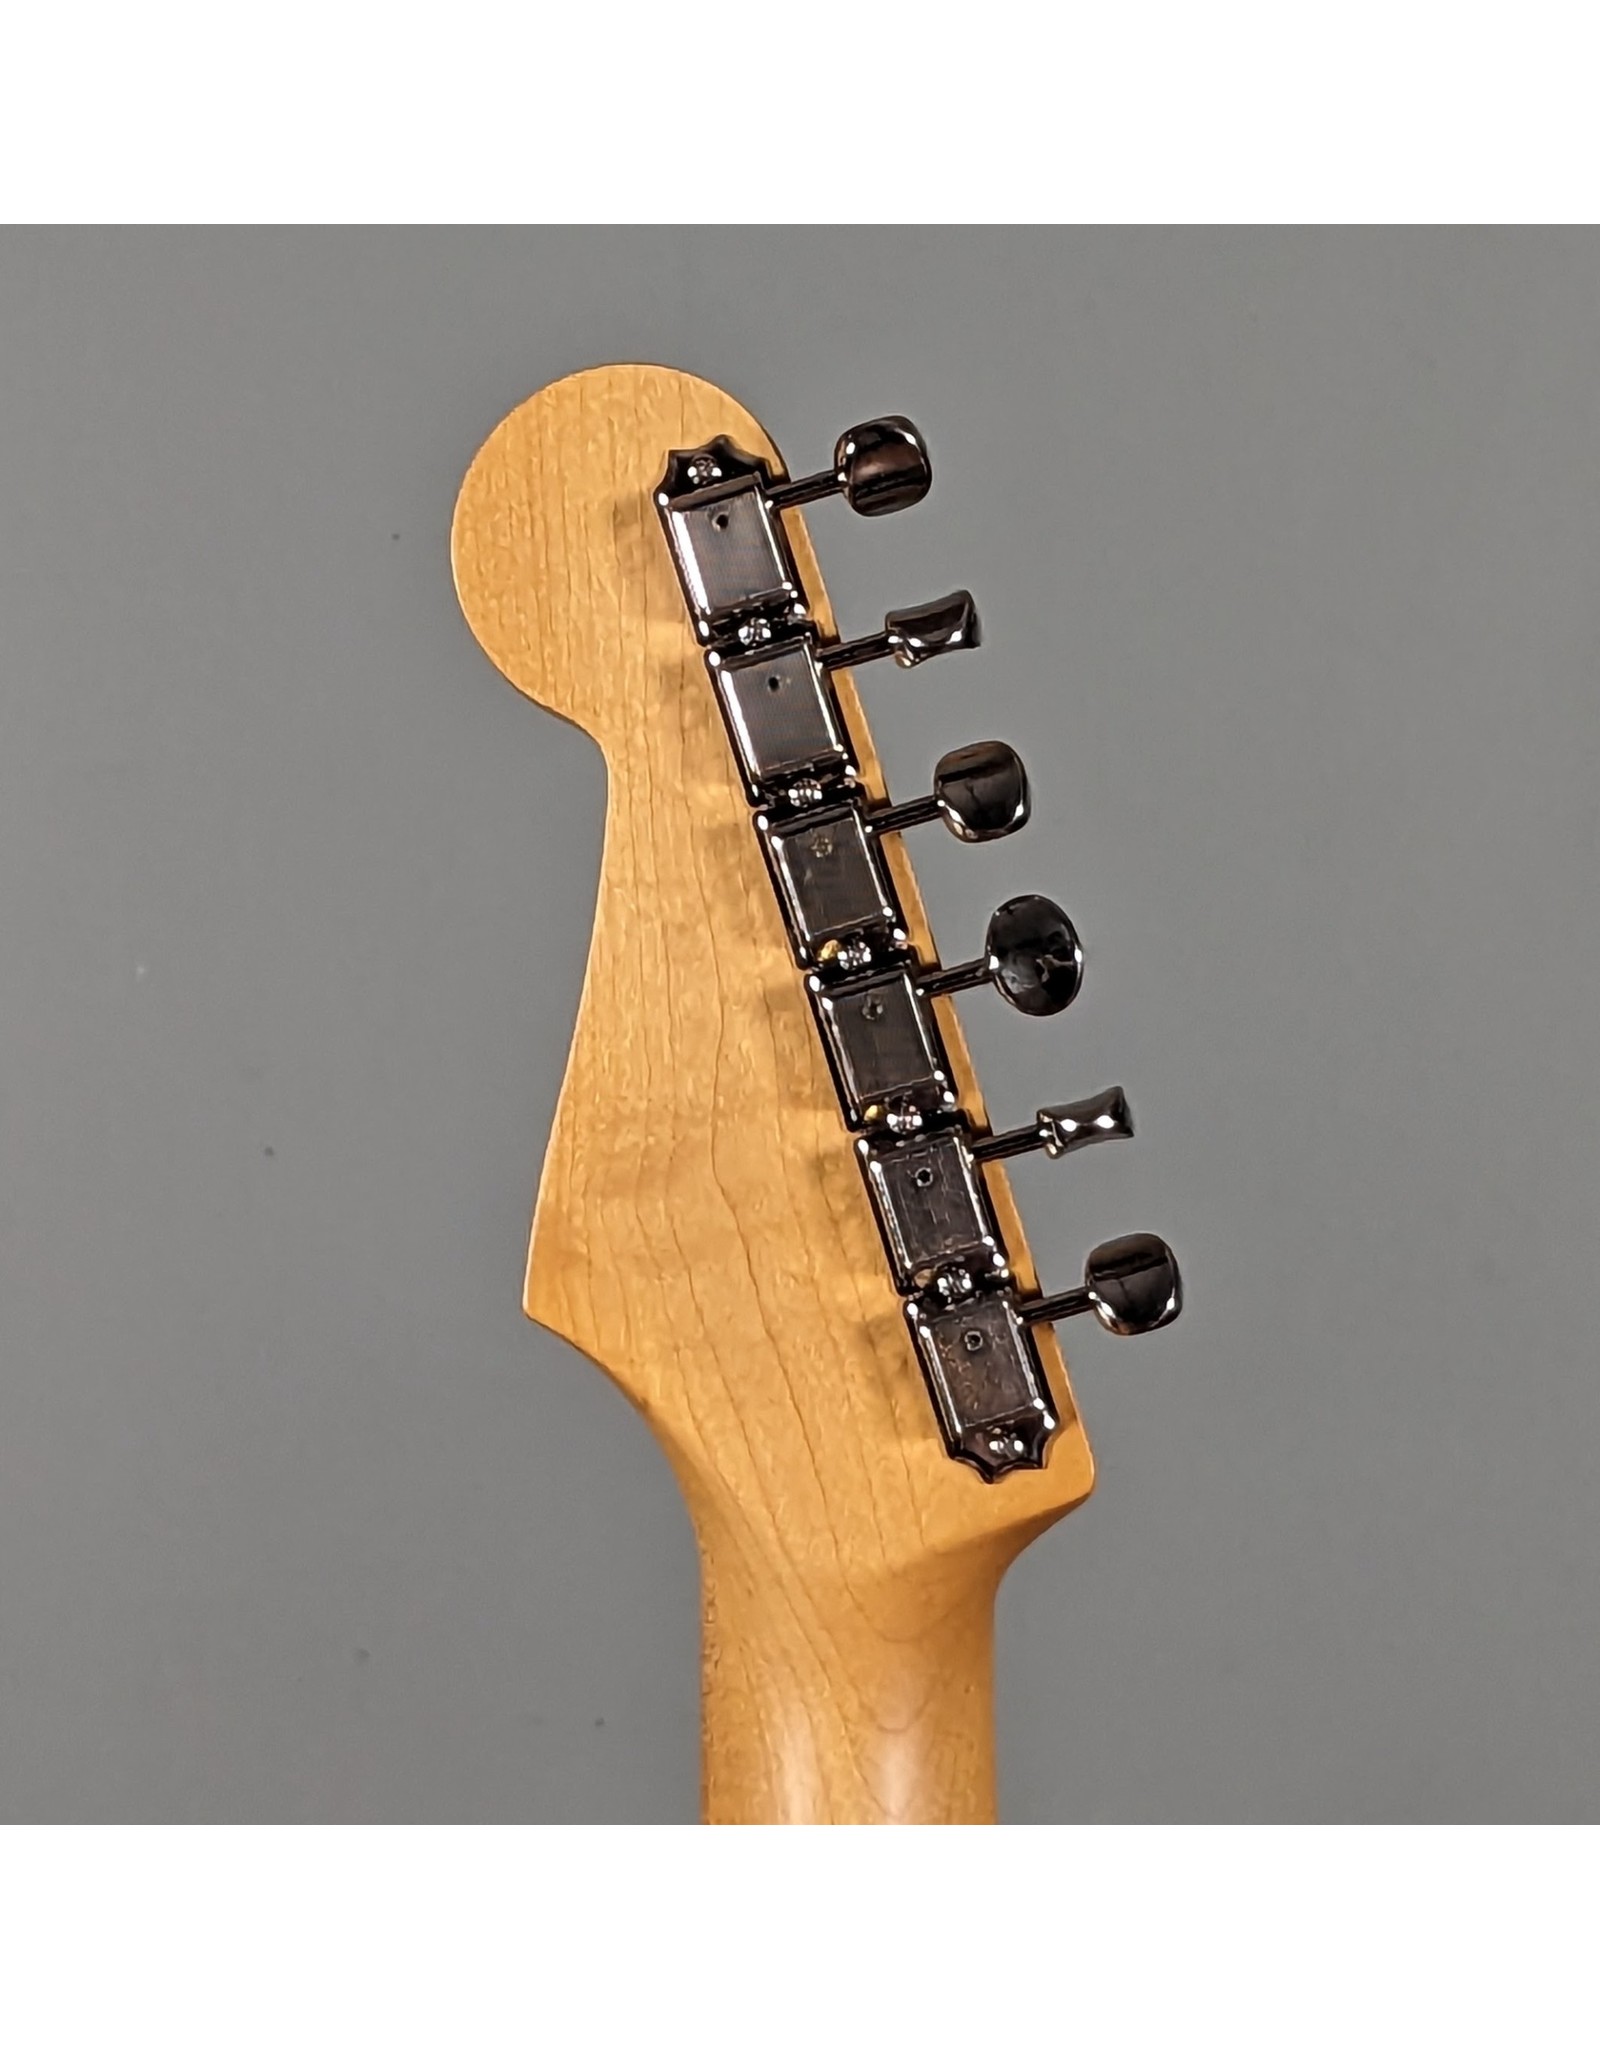 Fender Fender JV Modified '50s Stratocaster HSS, 2-Color Sunburst w/ Deluxe Gig Bag